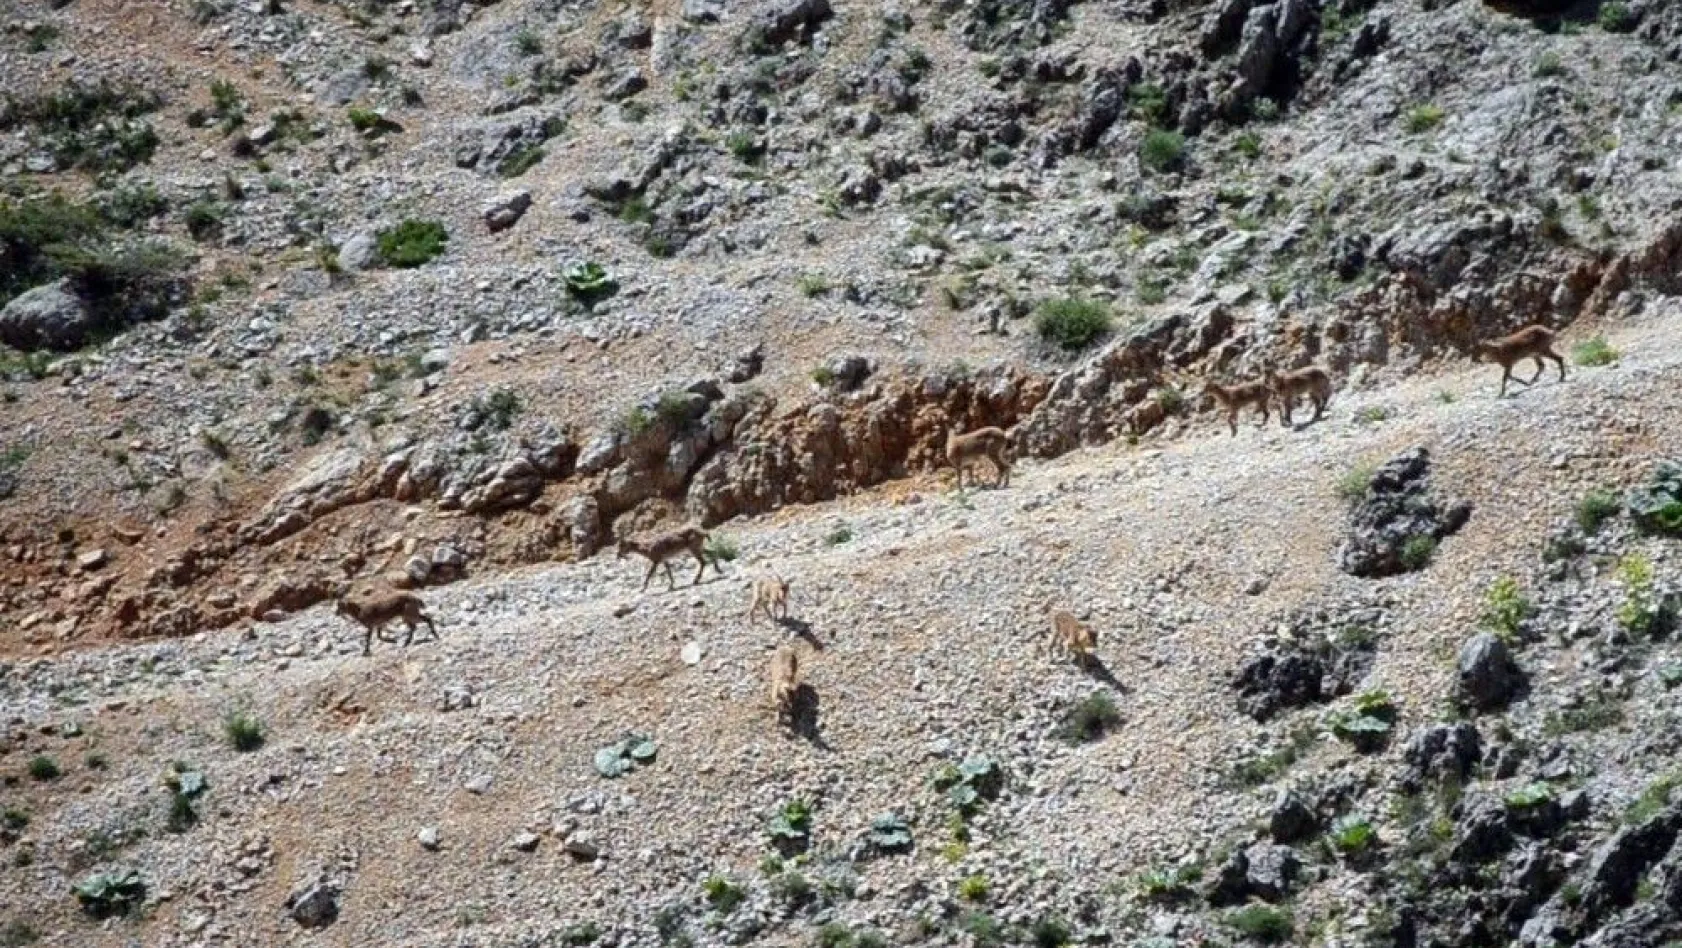 (Özel haber) Koruma altındaki dağ keçileri suya inerken görüntülendi
